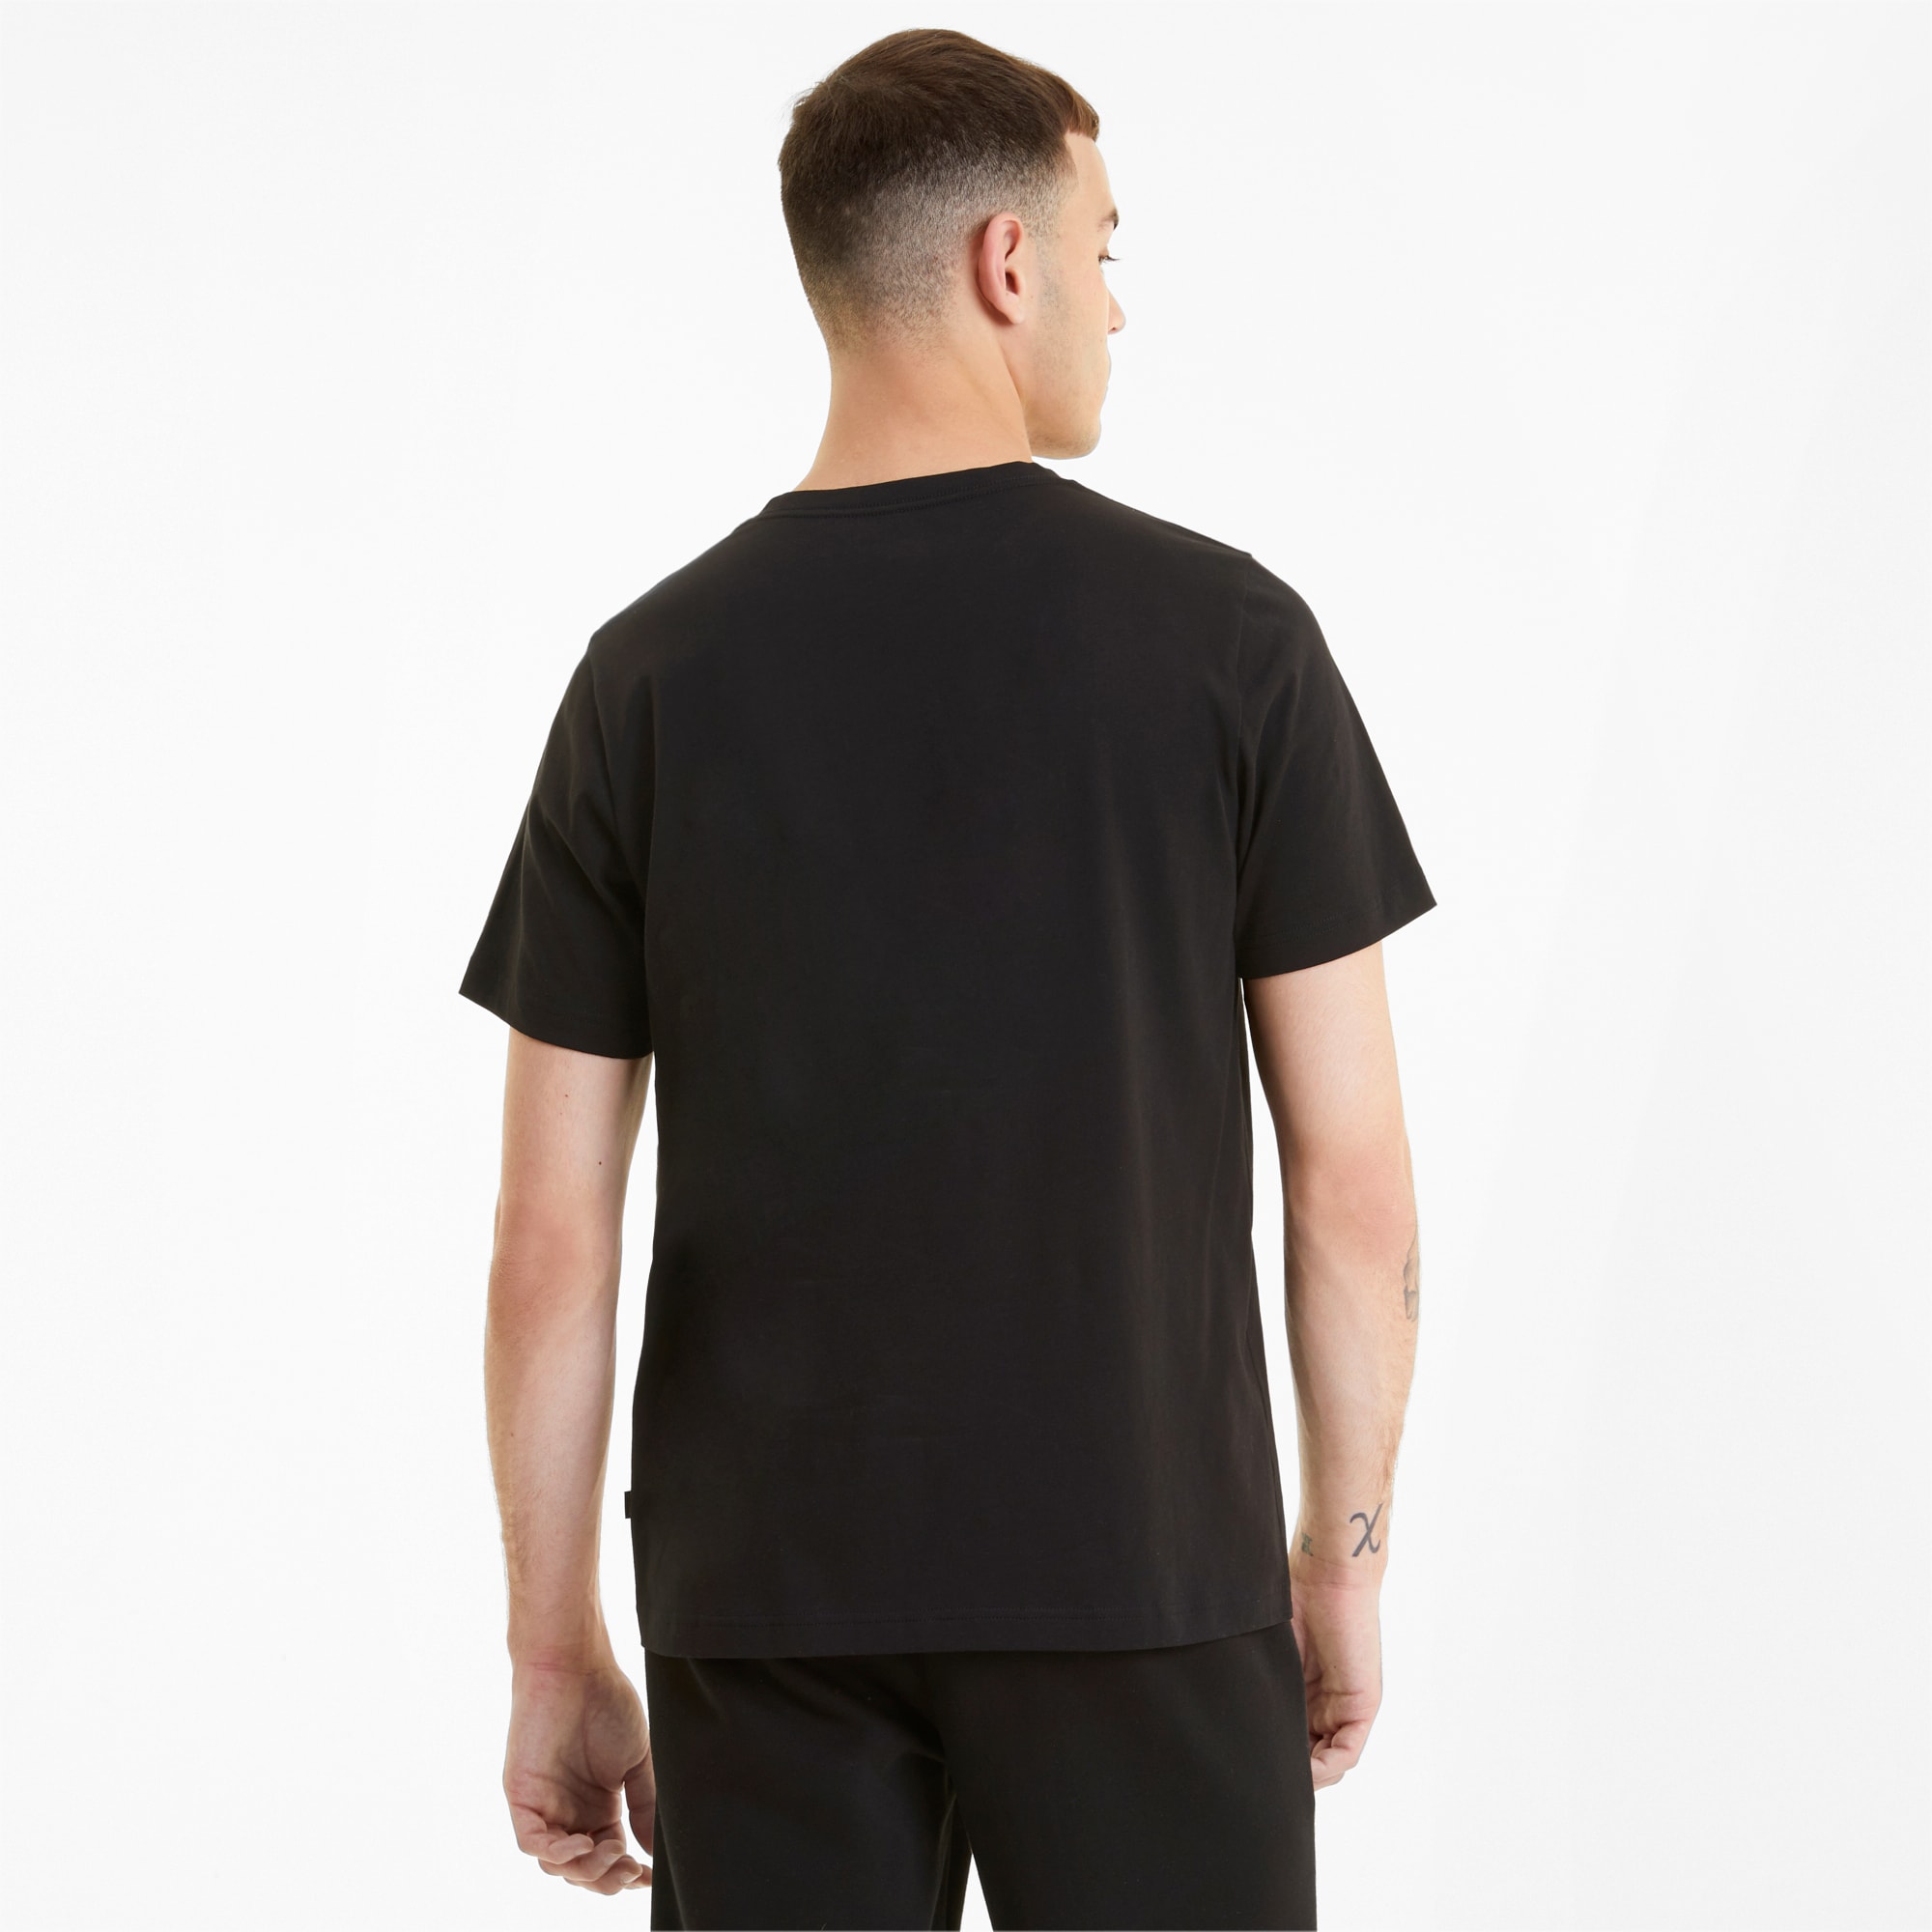 PUMA Essentials V-Neck T-Shirt Men, Black, Size L, Clothing